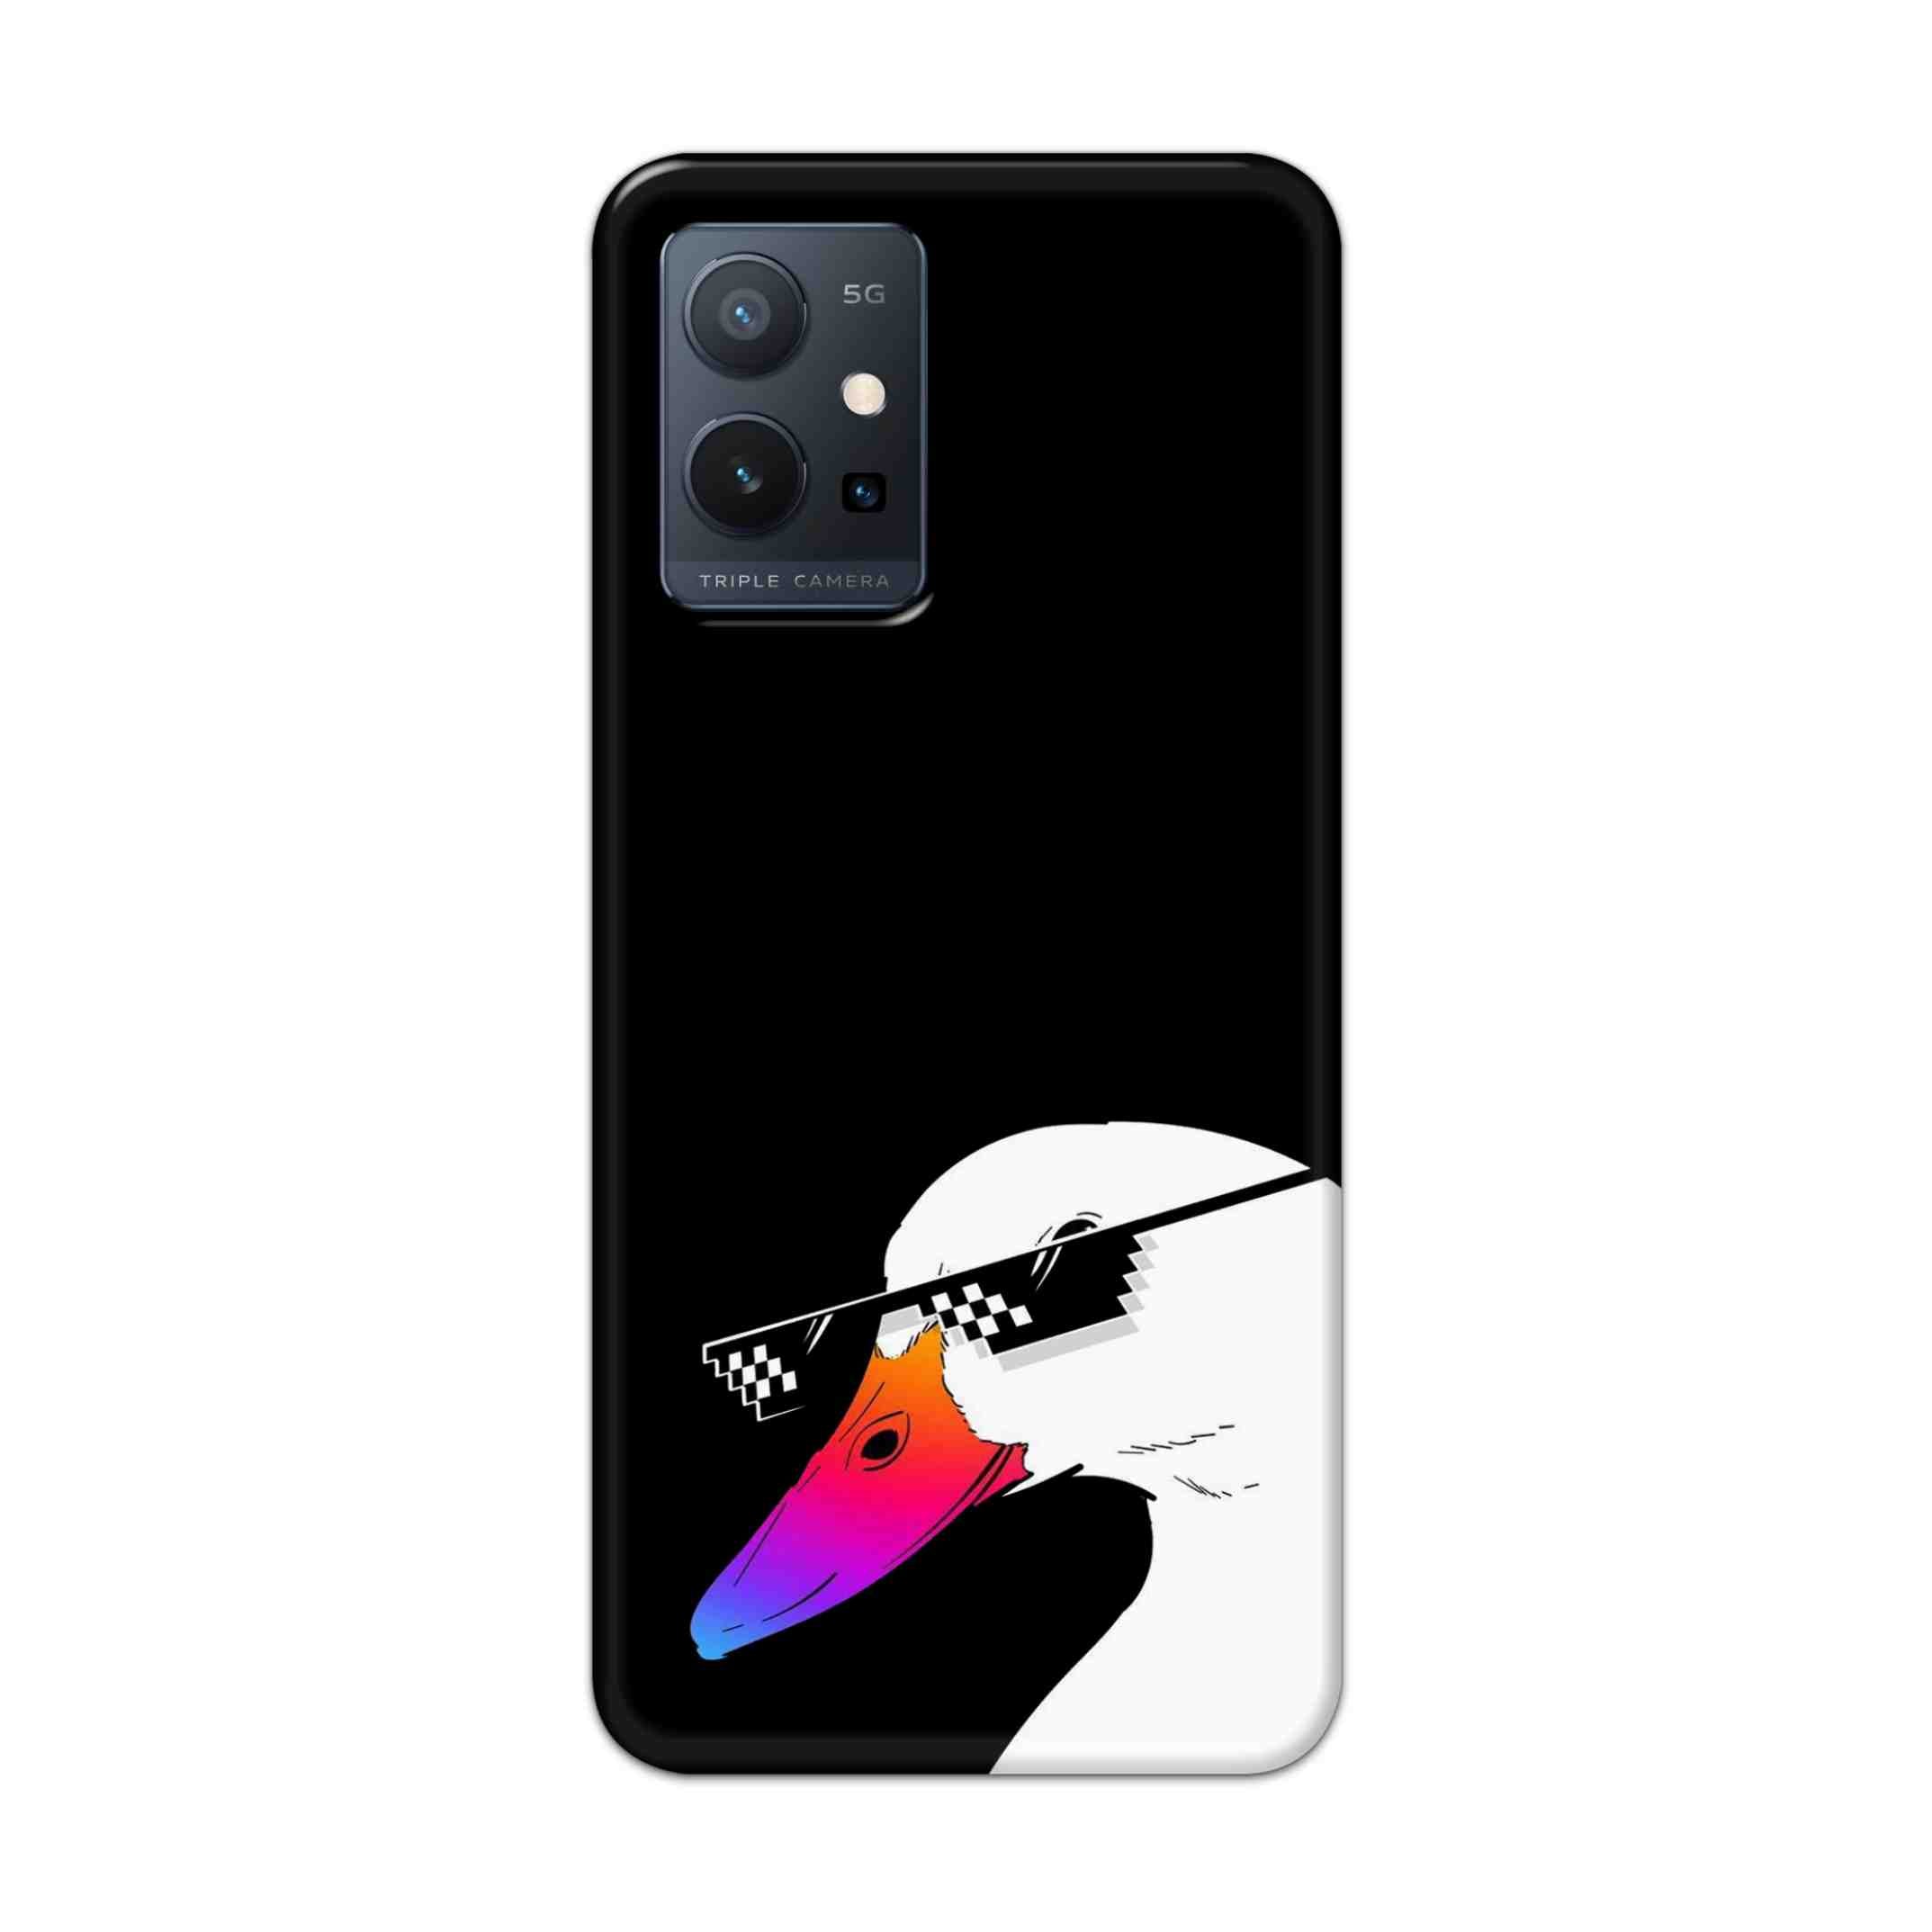 Buy Neon Duck Hard Back Mobile Phone Case Cover For Vivo T1 5G Online